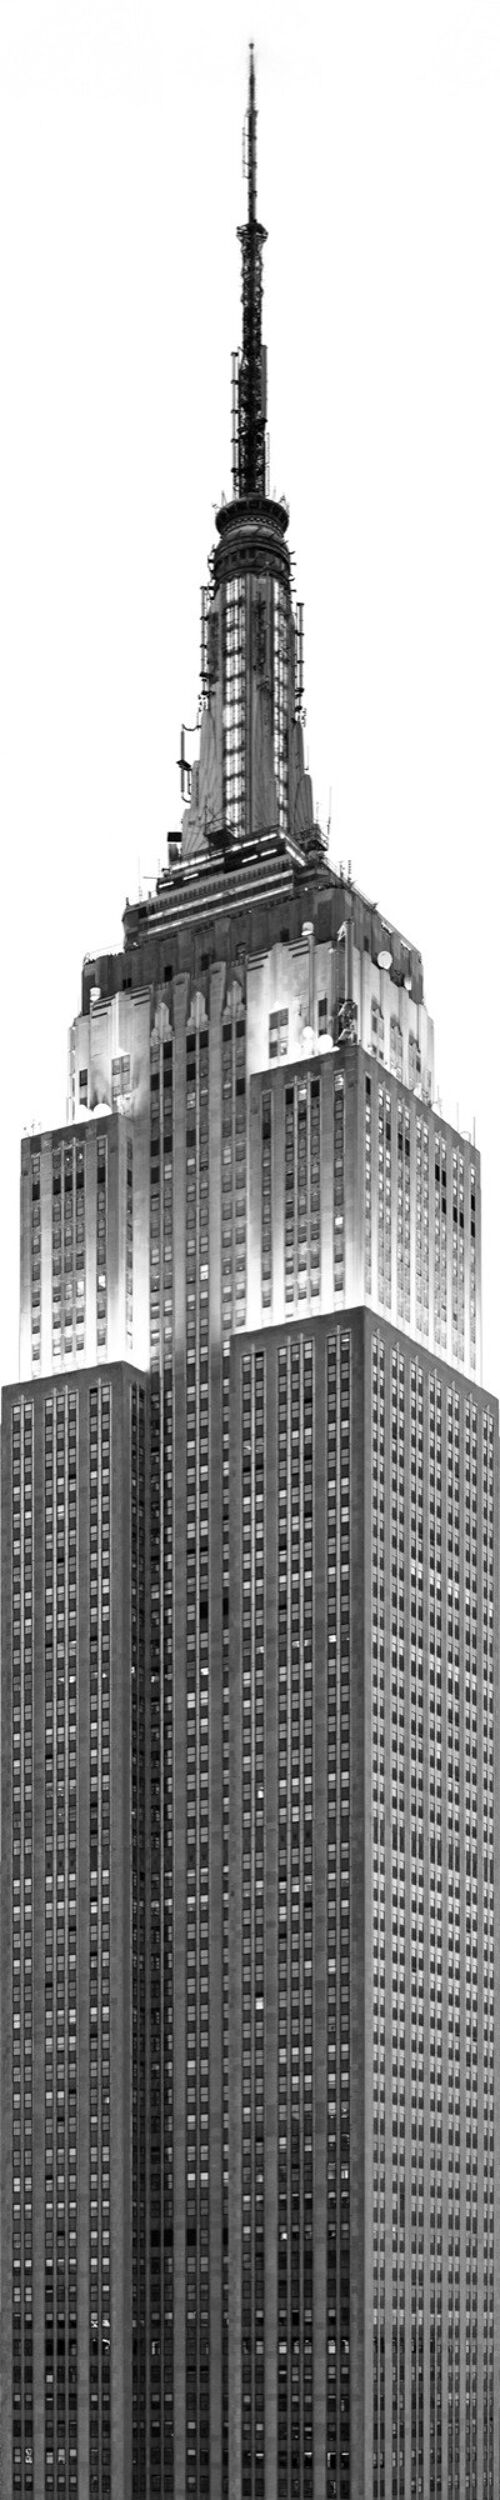 Vlies Fototapete - Empire State Building - Größe 50 x 250 cm